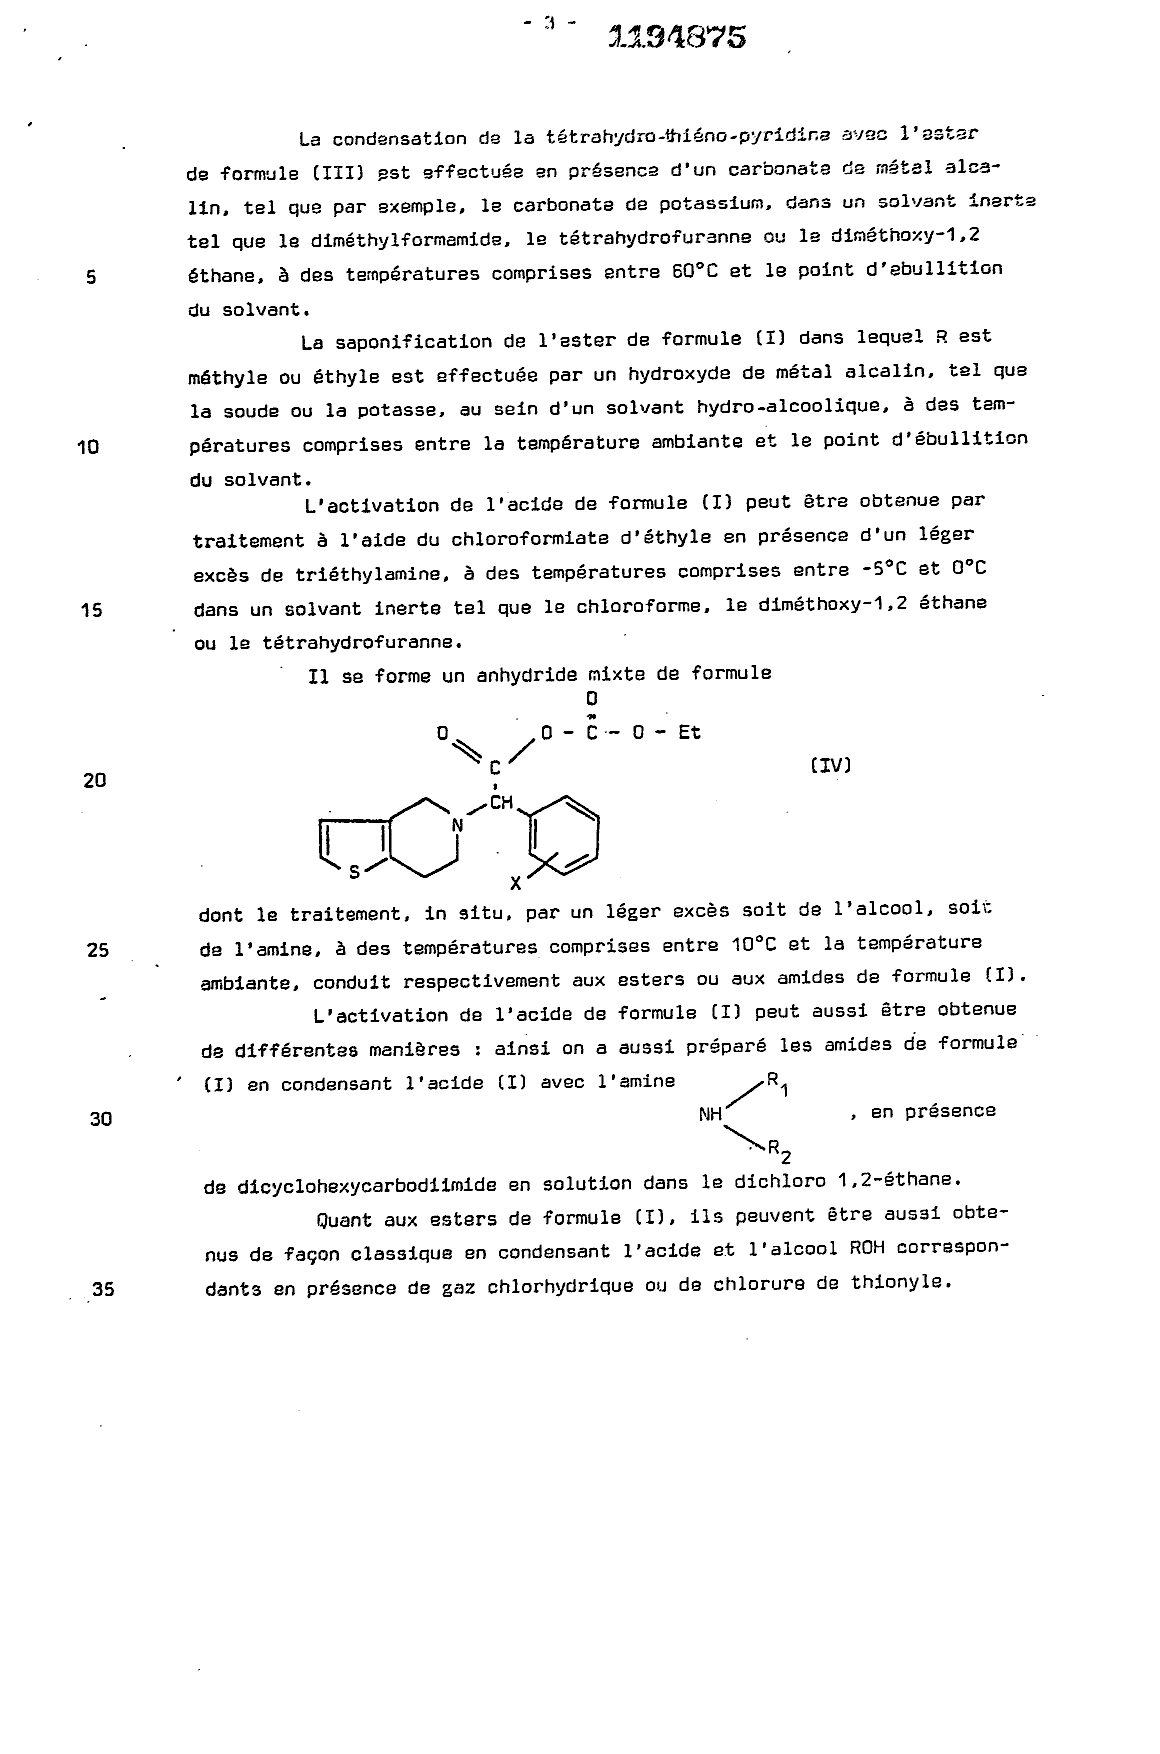 Canadian Patent Document 1194875. Description 19921218. Image 3 of 15